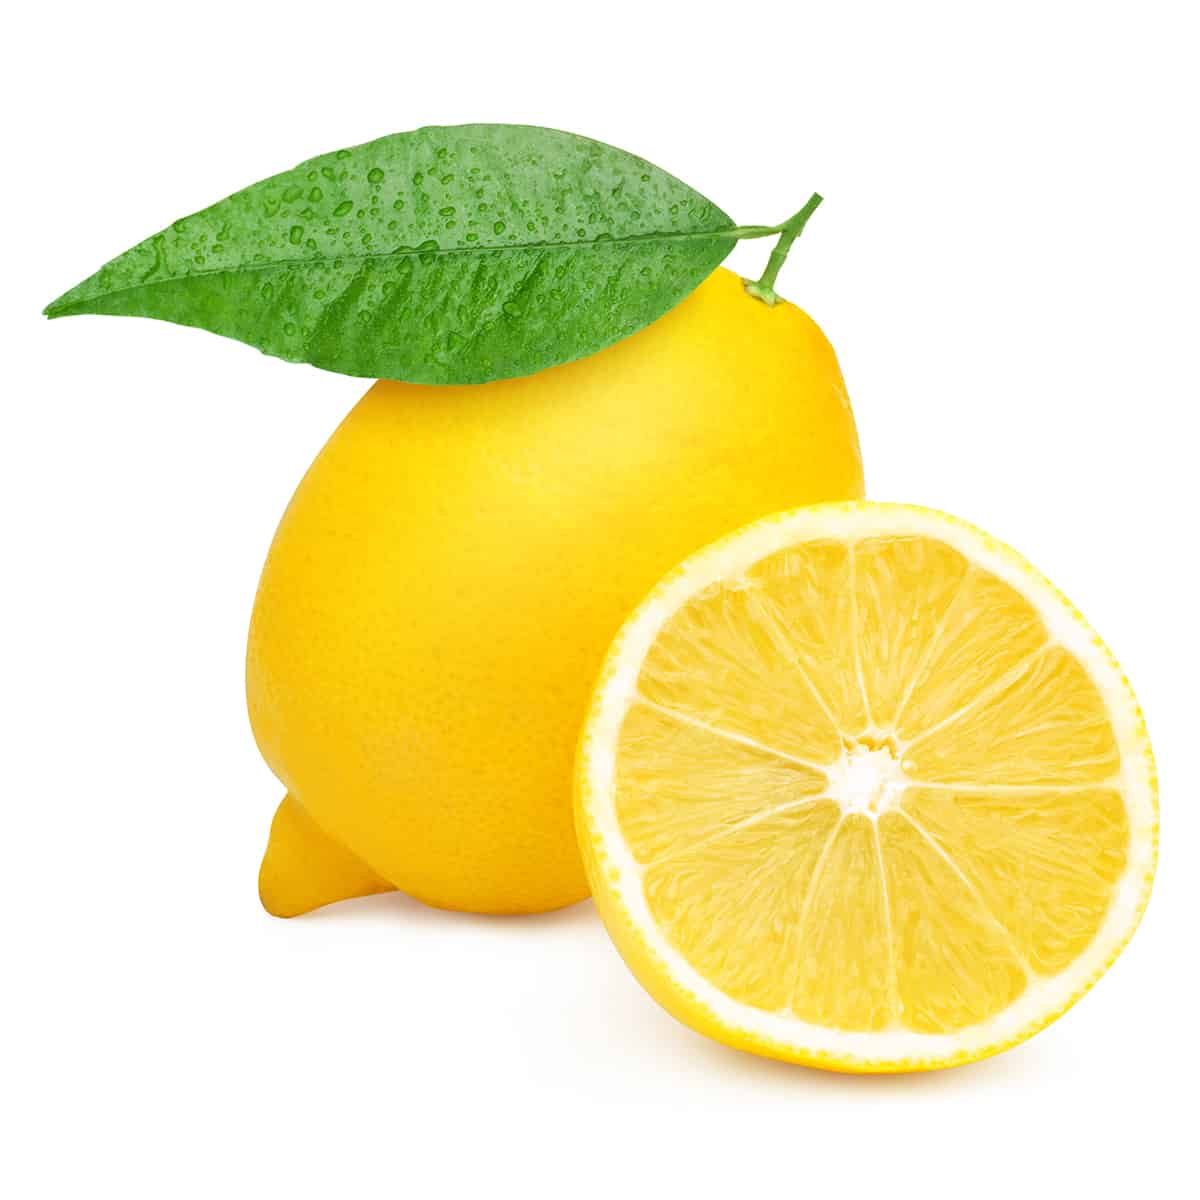 1 limón